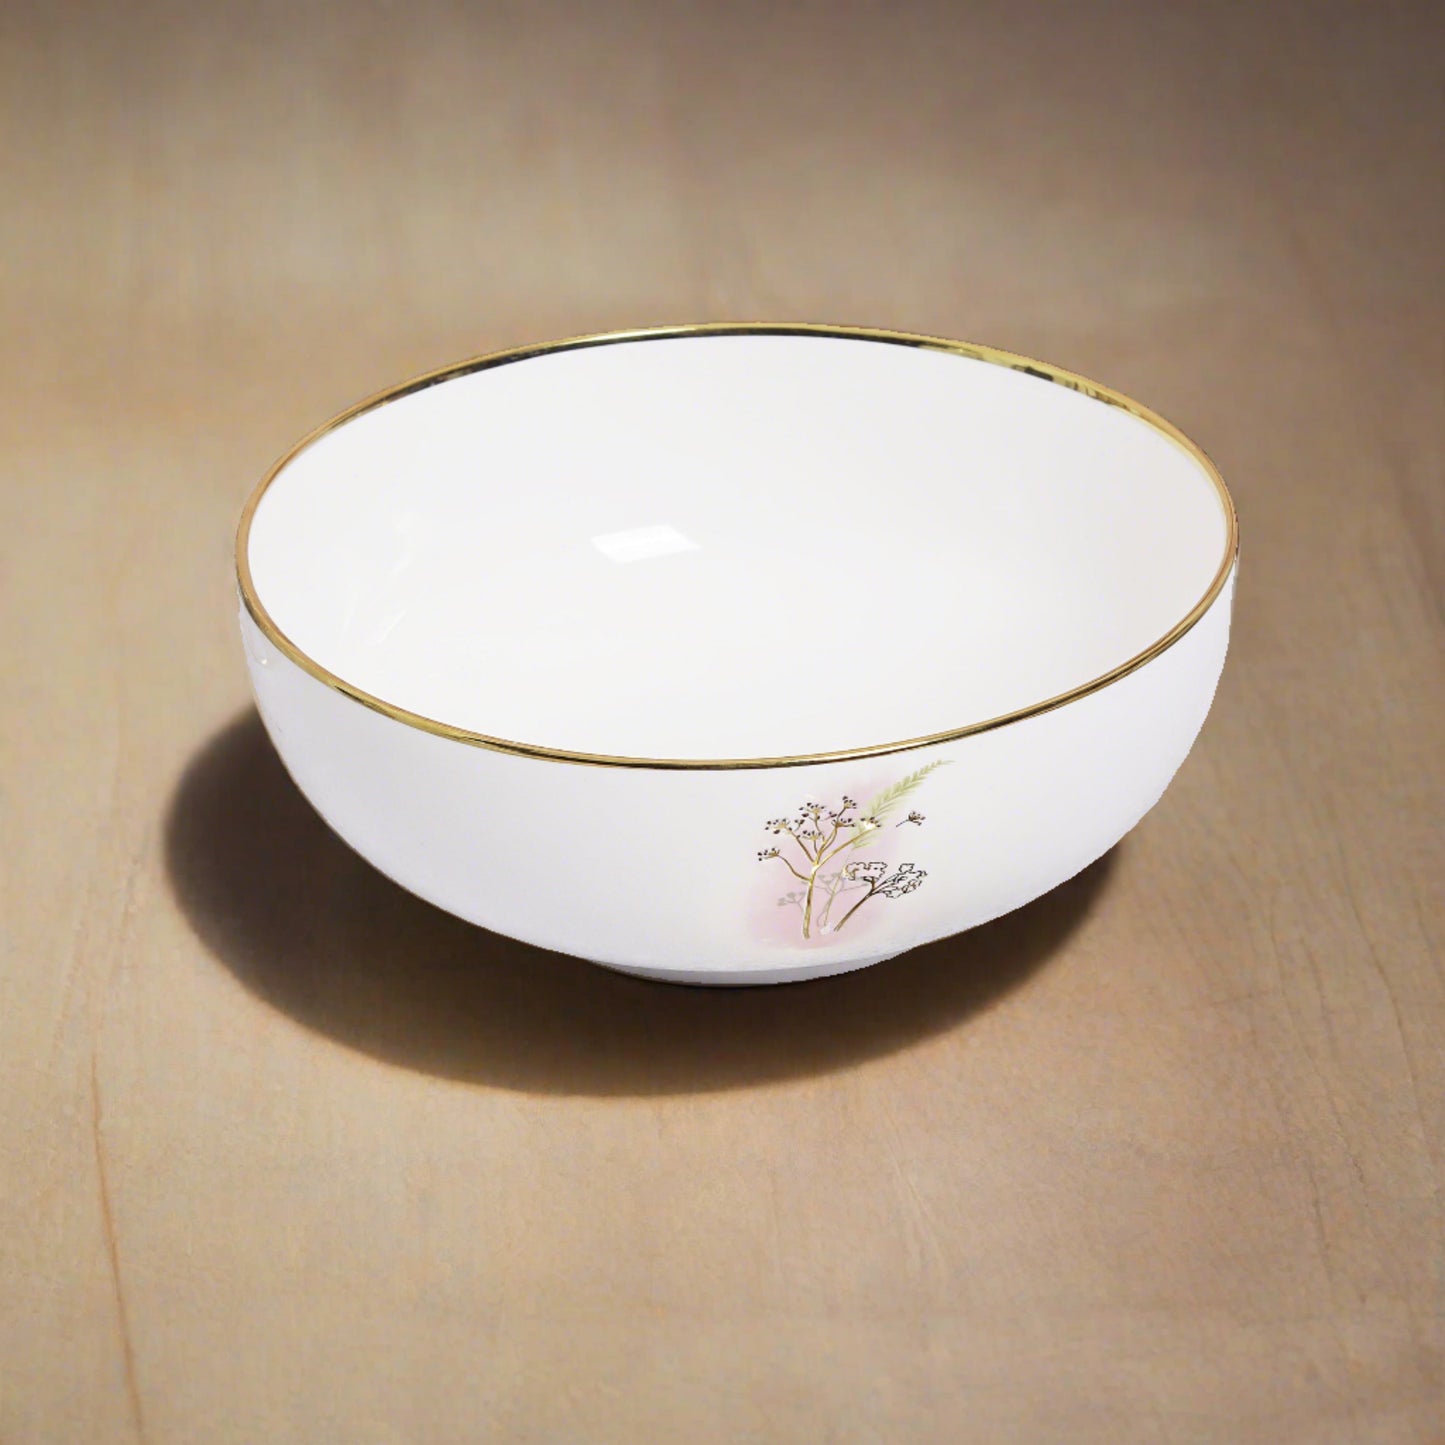 Elegant ceramic serving bowl - great for presenting salads or sides